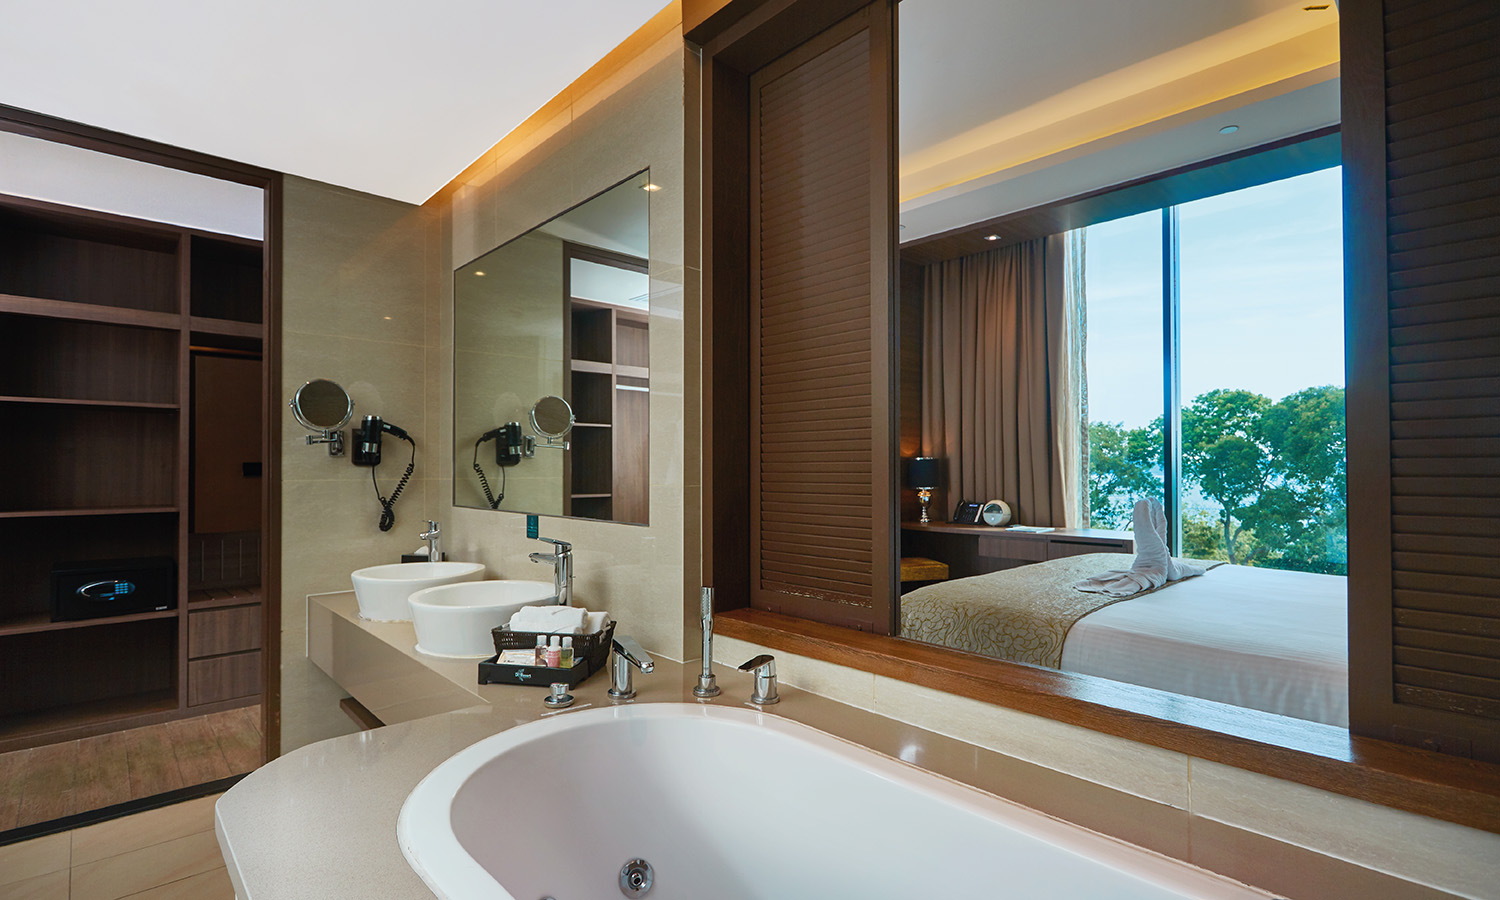 Rainforest Premier Suite - Suite at D'Resort Singapore